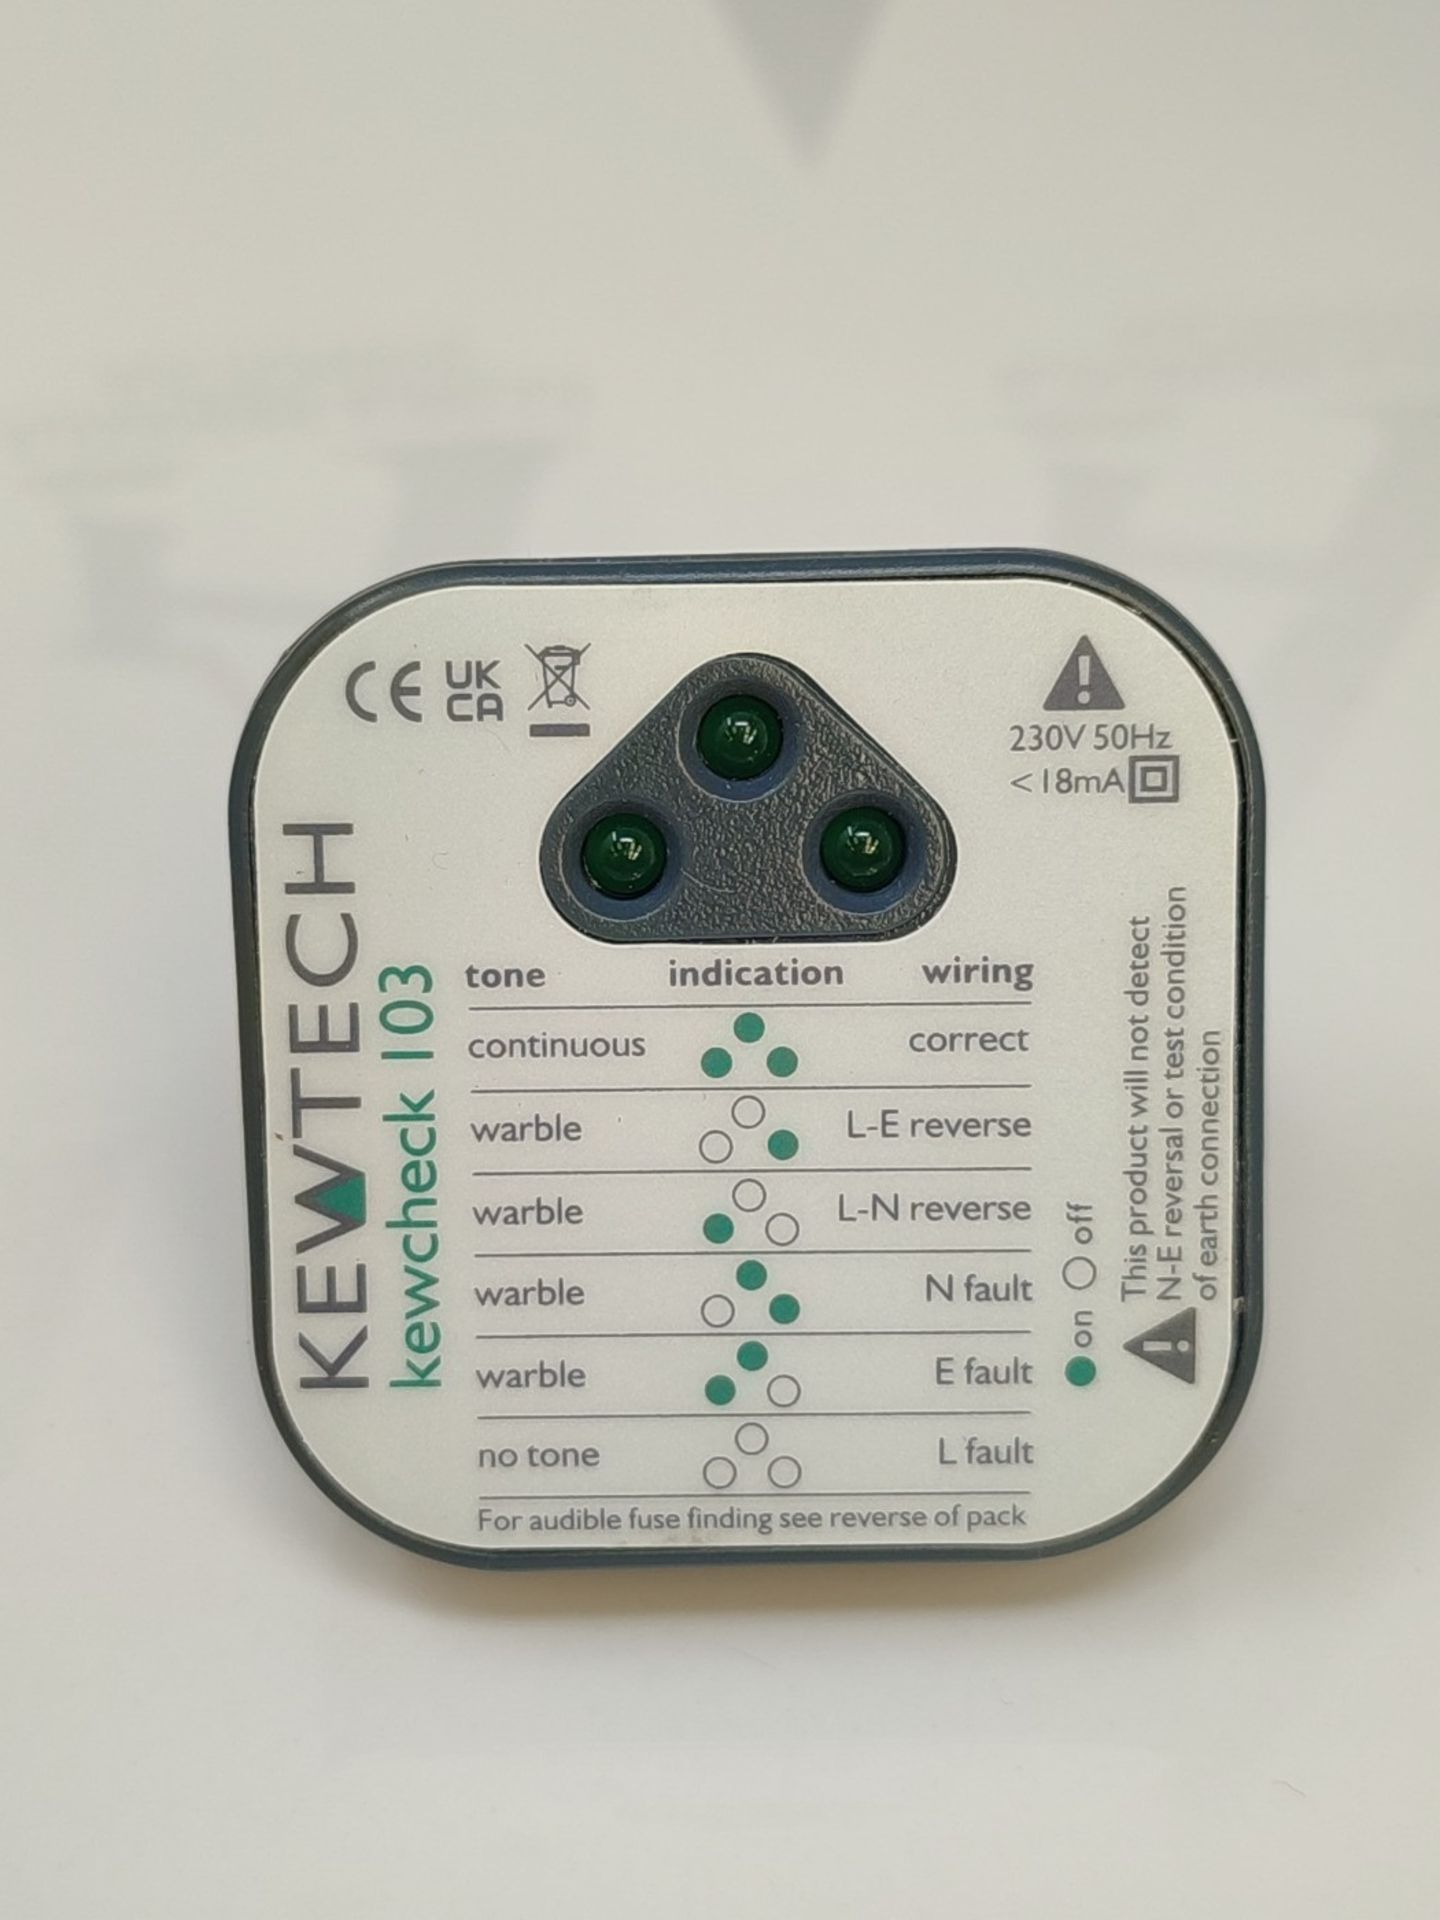 Kewtech KEWCHECK103 Mains Wiring Socket Tester - Image 3 of 3